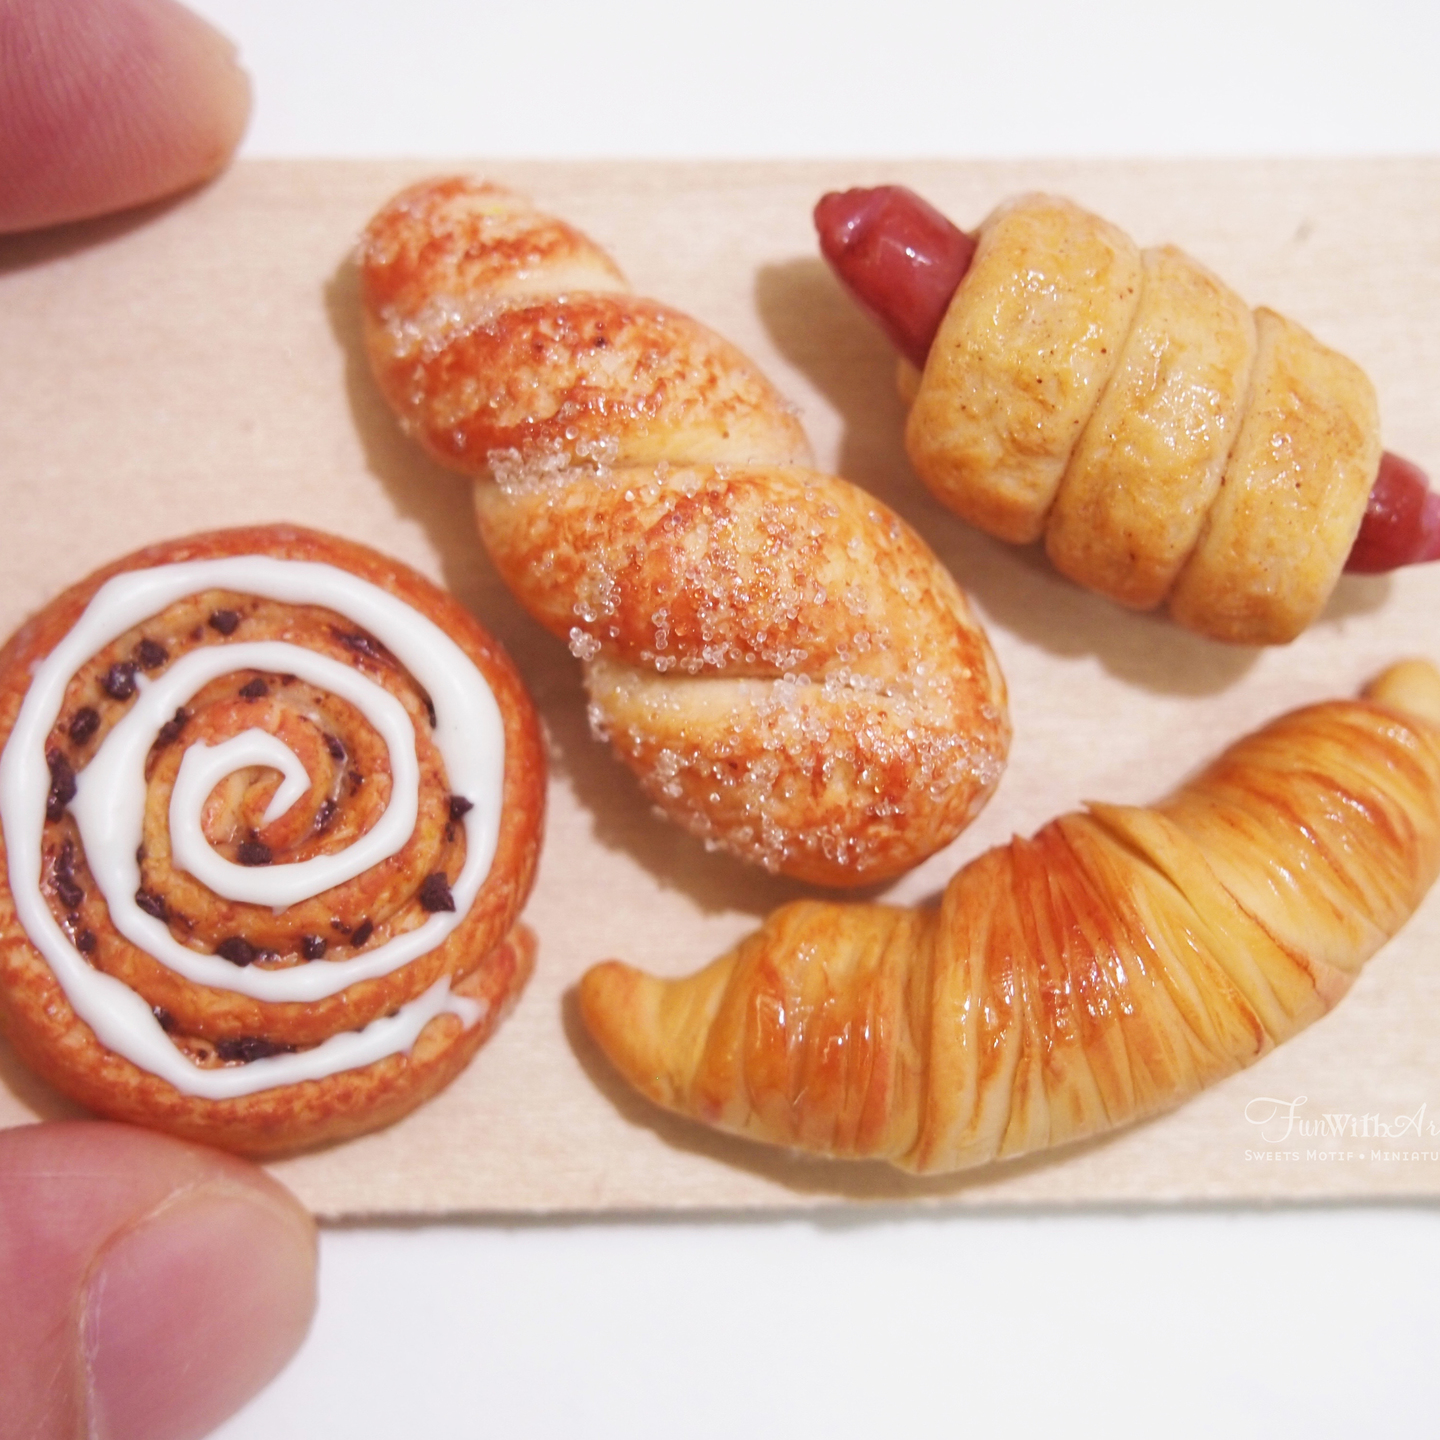 Miniature Bread on wooden Board